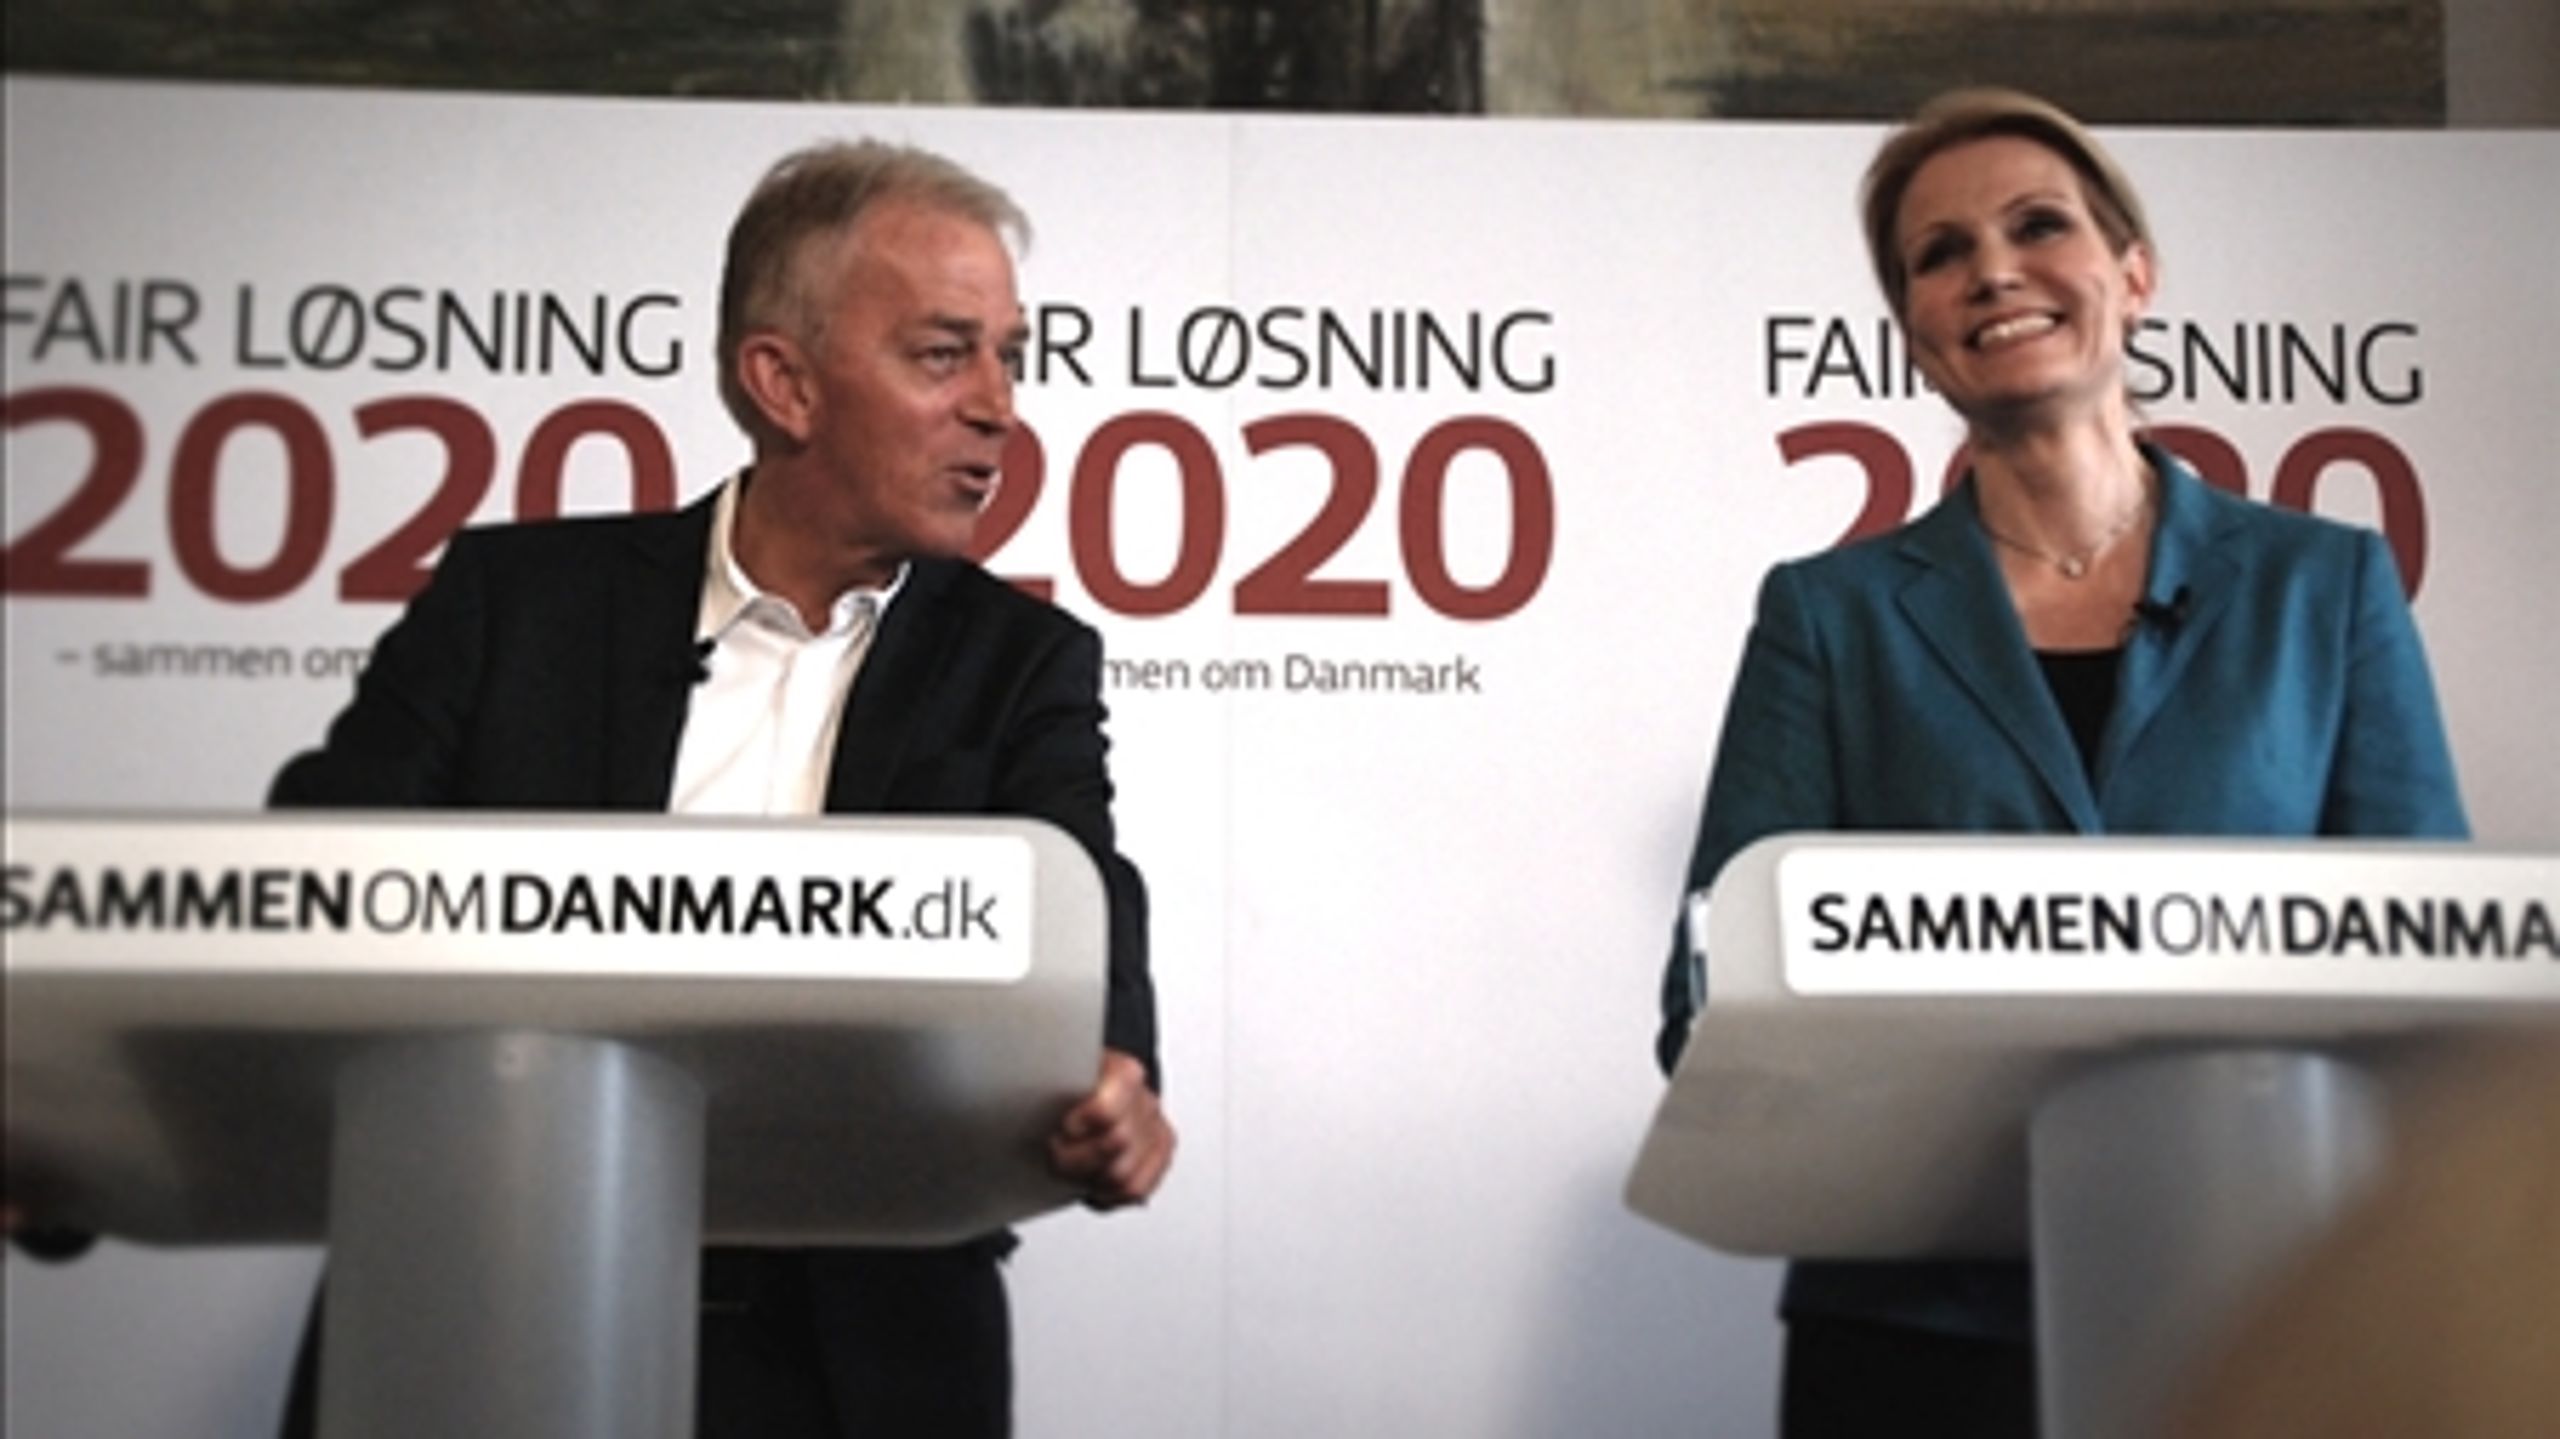 Villy Søvndal og Helle Thorning-Schmidt ved fremlæggelsen af S-SF's "Fair Løsning". De fik opbakning fra LO. Spørgsmålet er nu, om fagbevægelsen har fået tilstrækkelig belønning for dens støtte. 